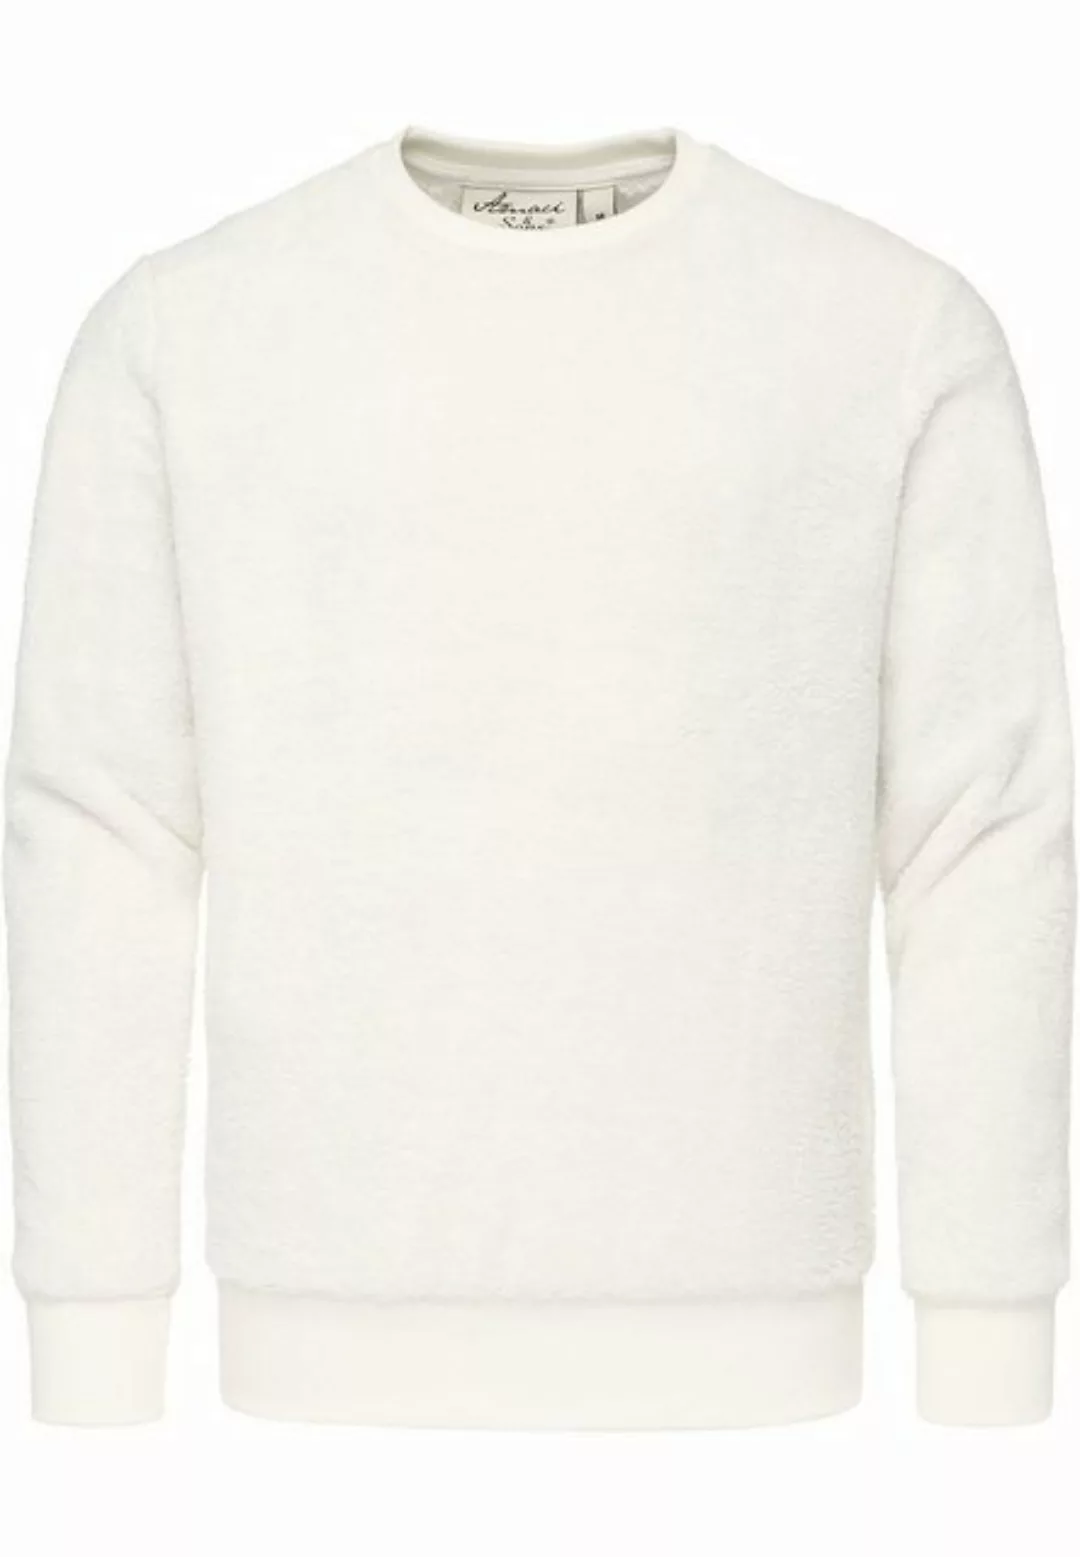 Amaci&Sons Sweatshirt LUDLOW Pullover mit Rundhalsausschnitt Herren Teddy P günstig online kaufen